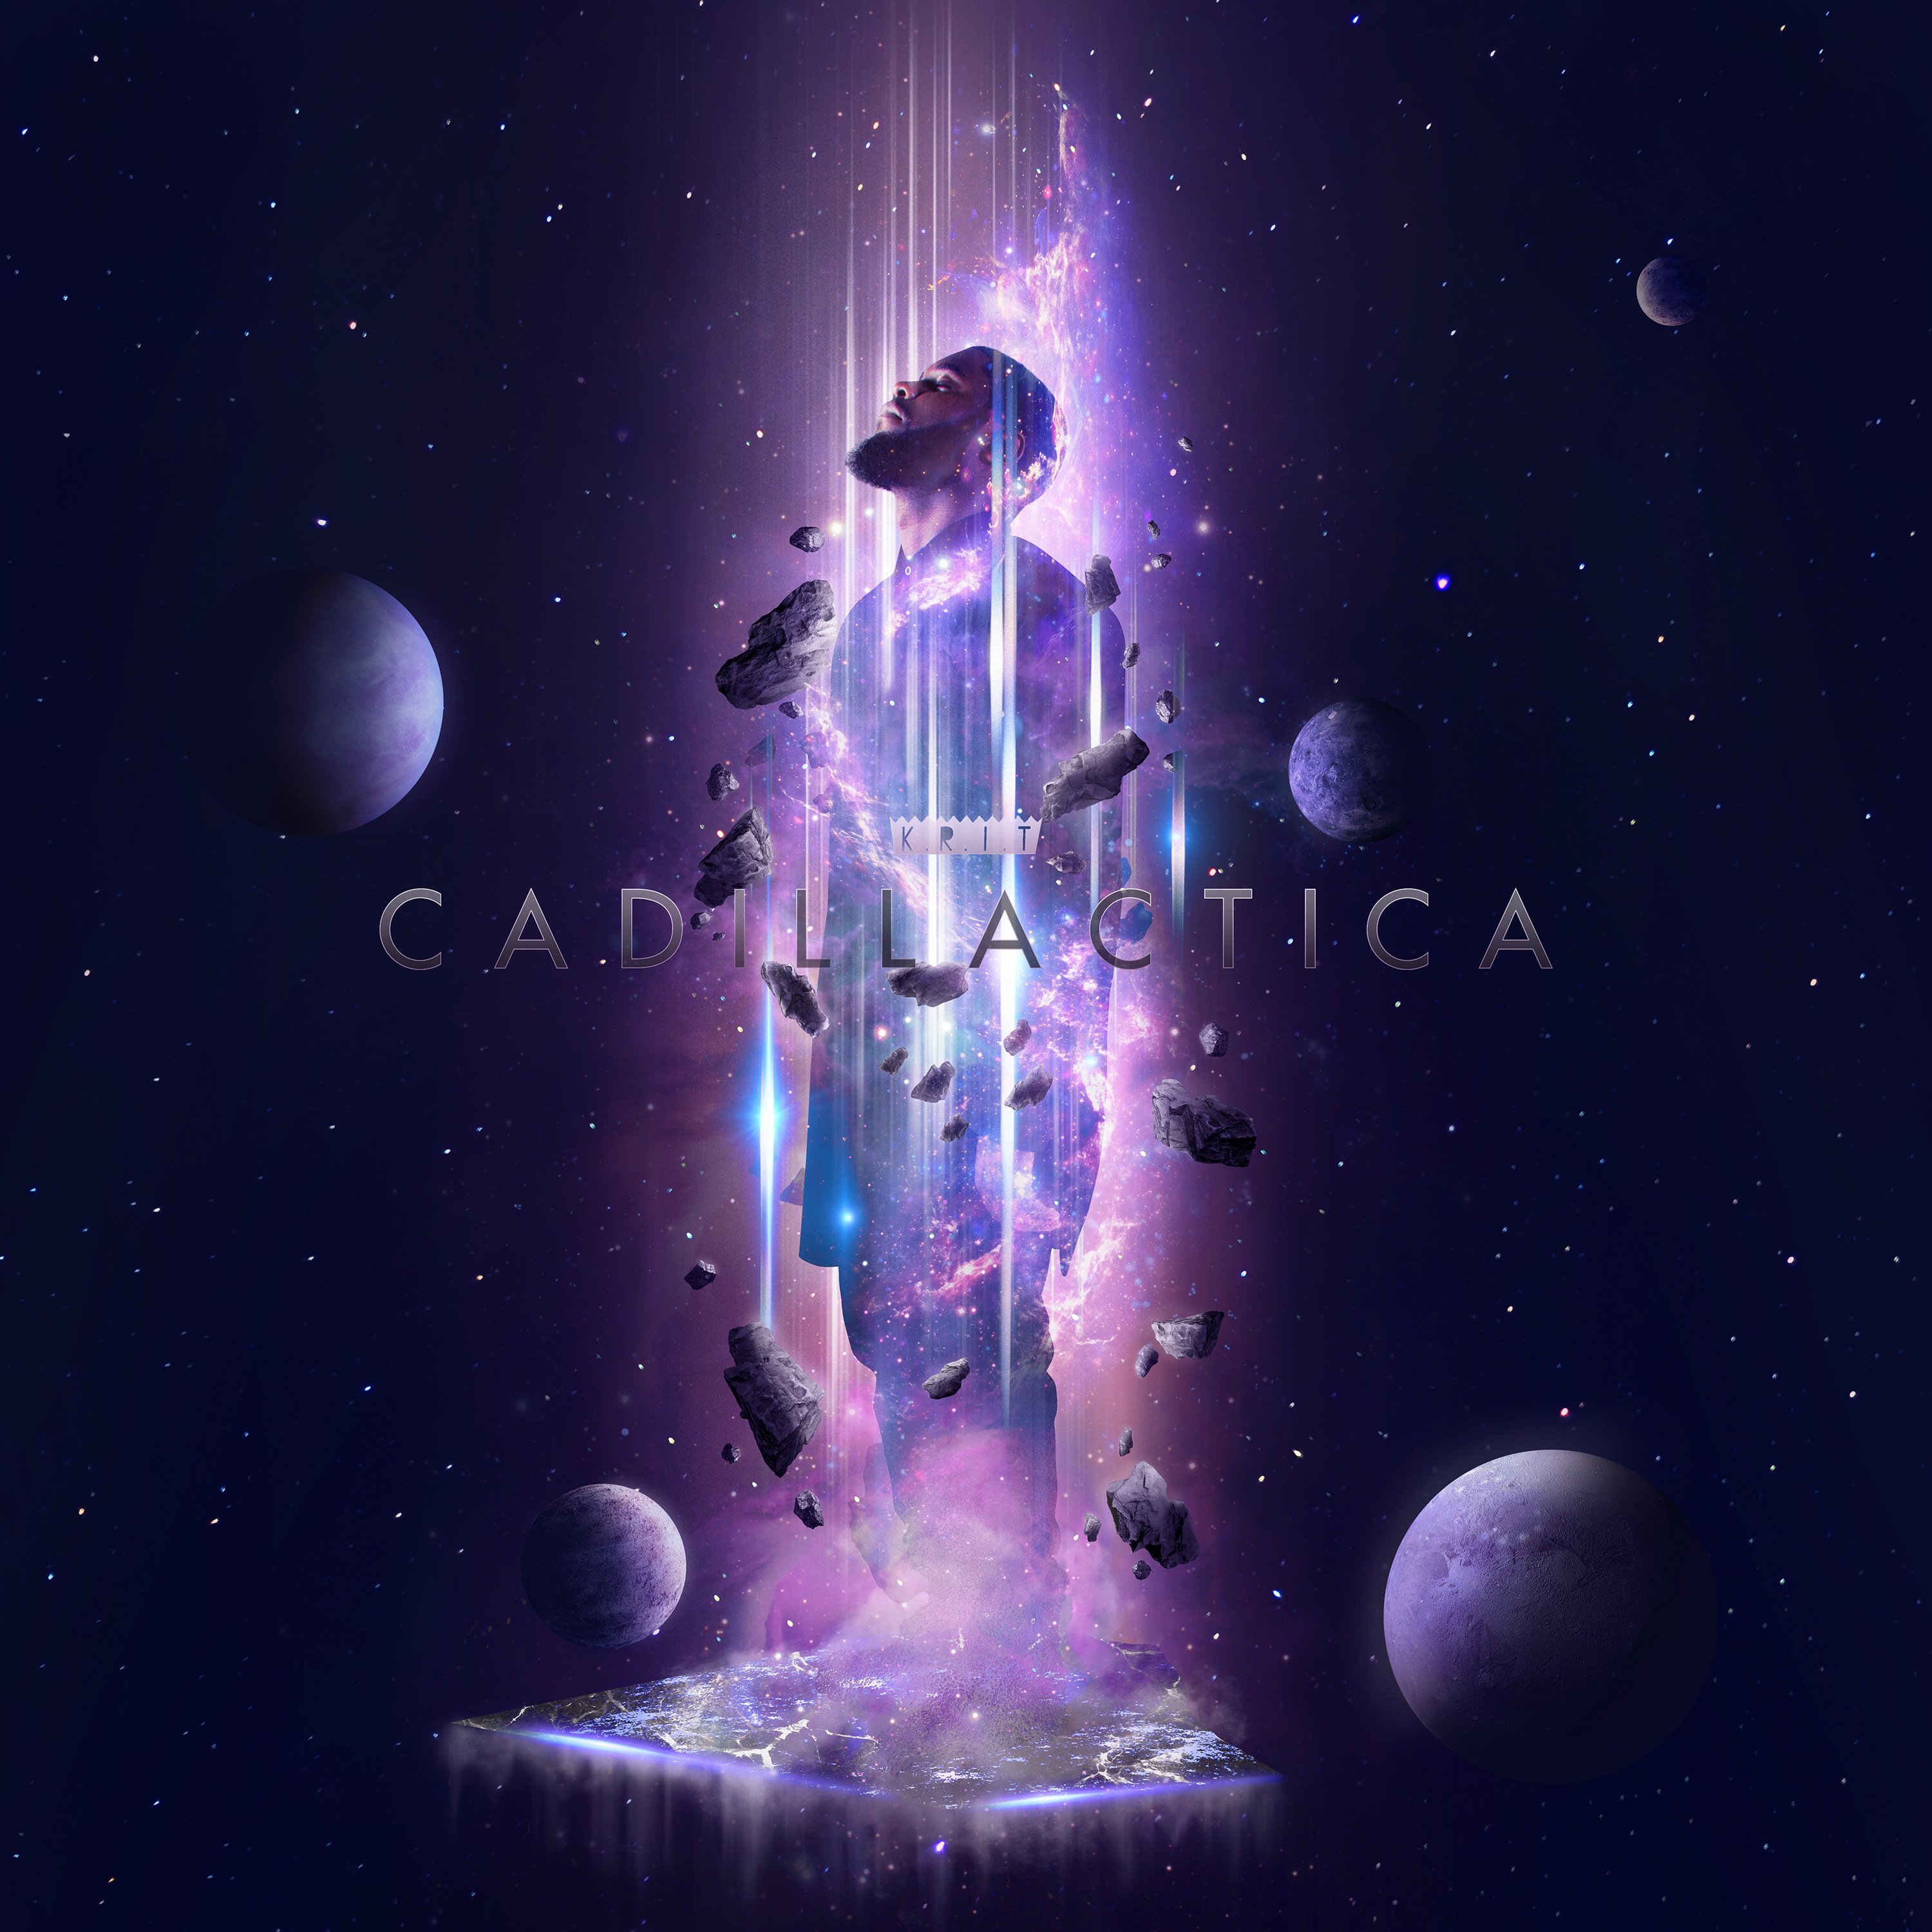 cadillactica-big-krit-album-stream-cover-art-2014